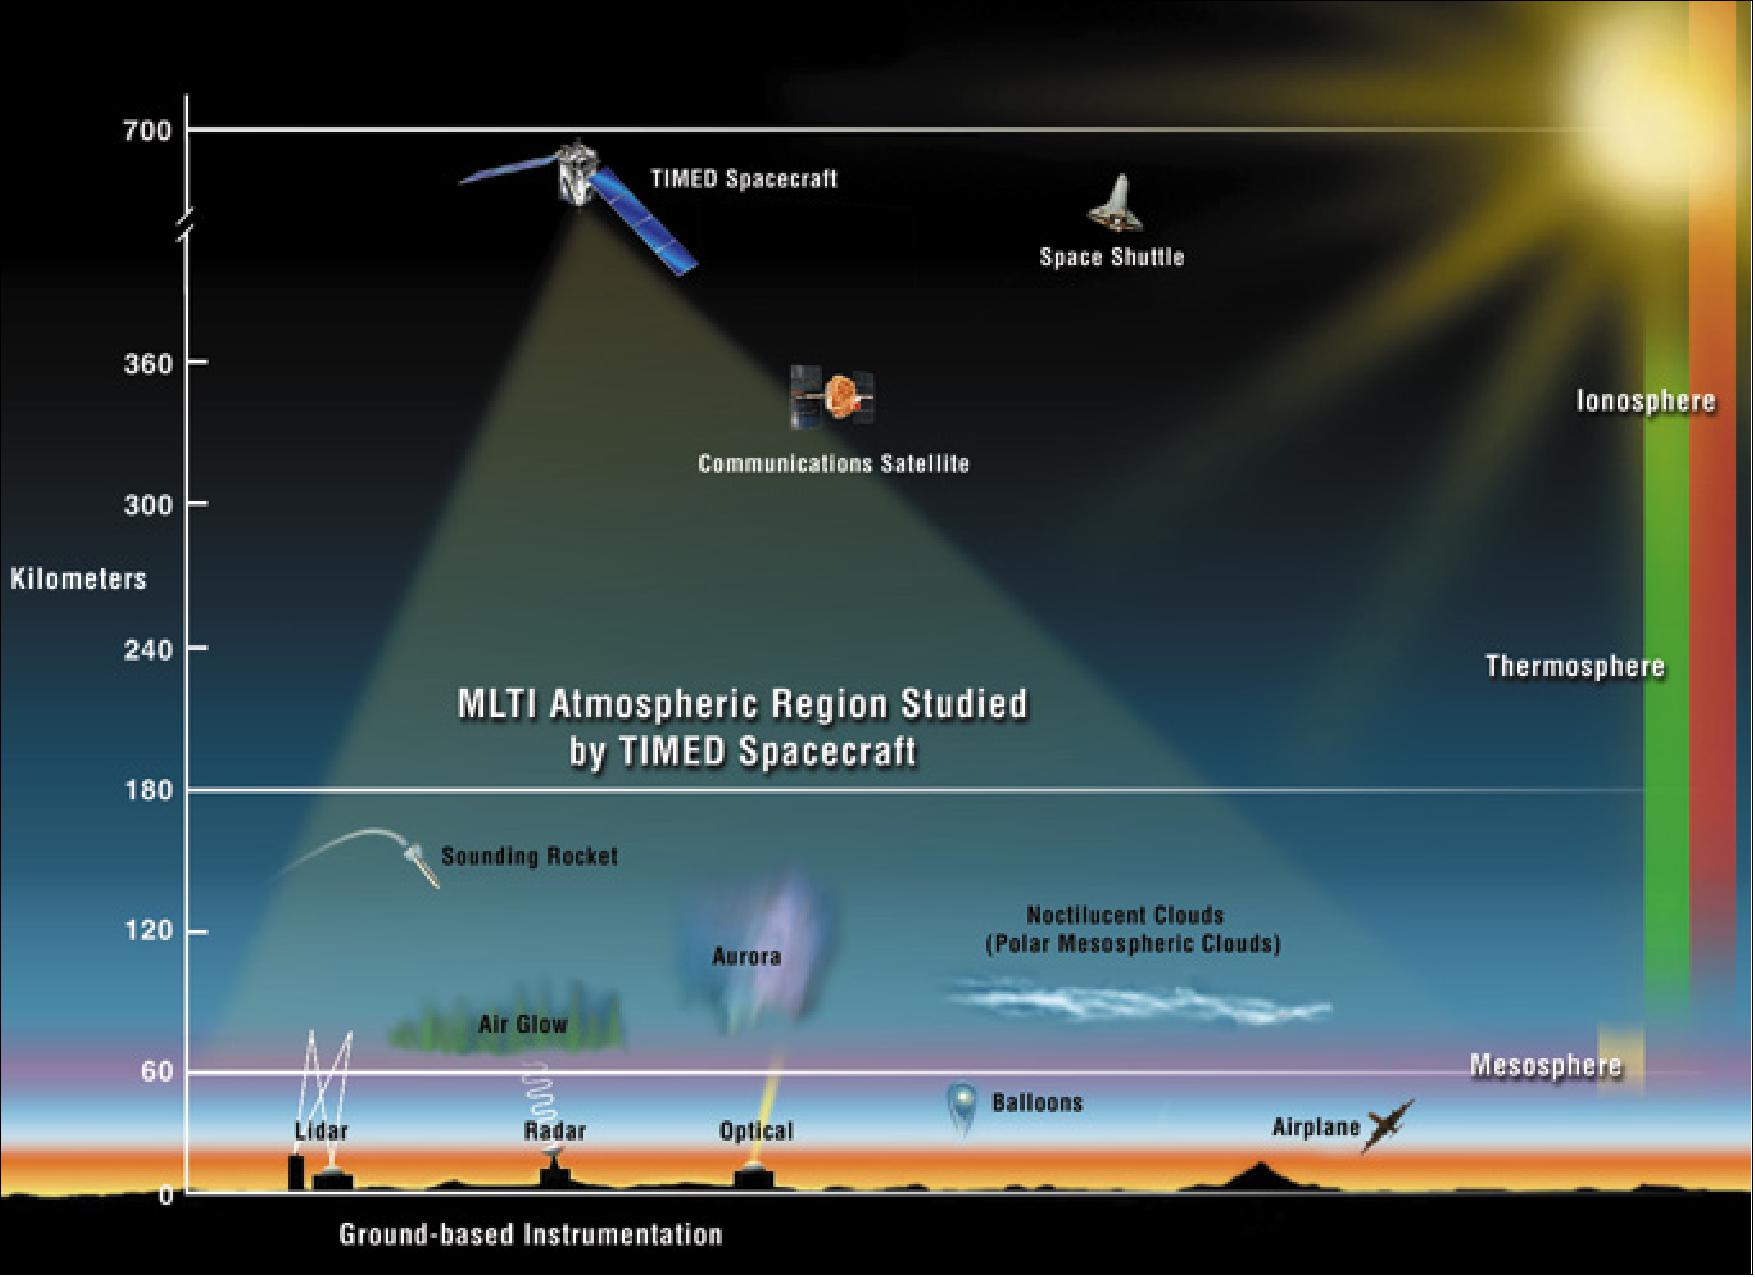 Figure 1: Illustration of TIMED observation region in Earth's atmosphere (image credit: JHU/APL)